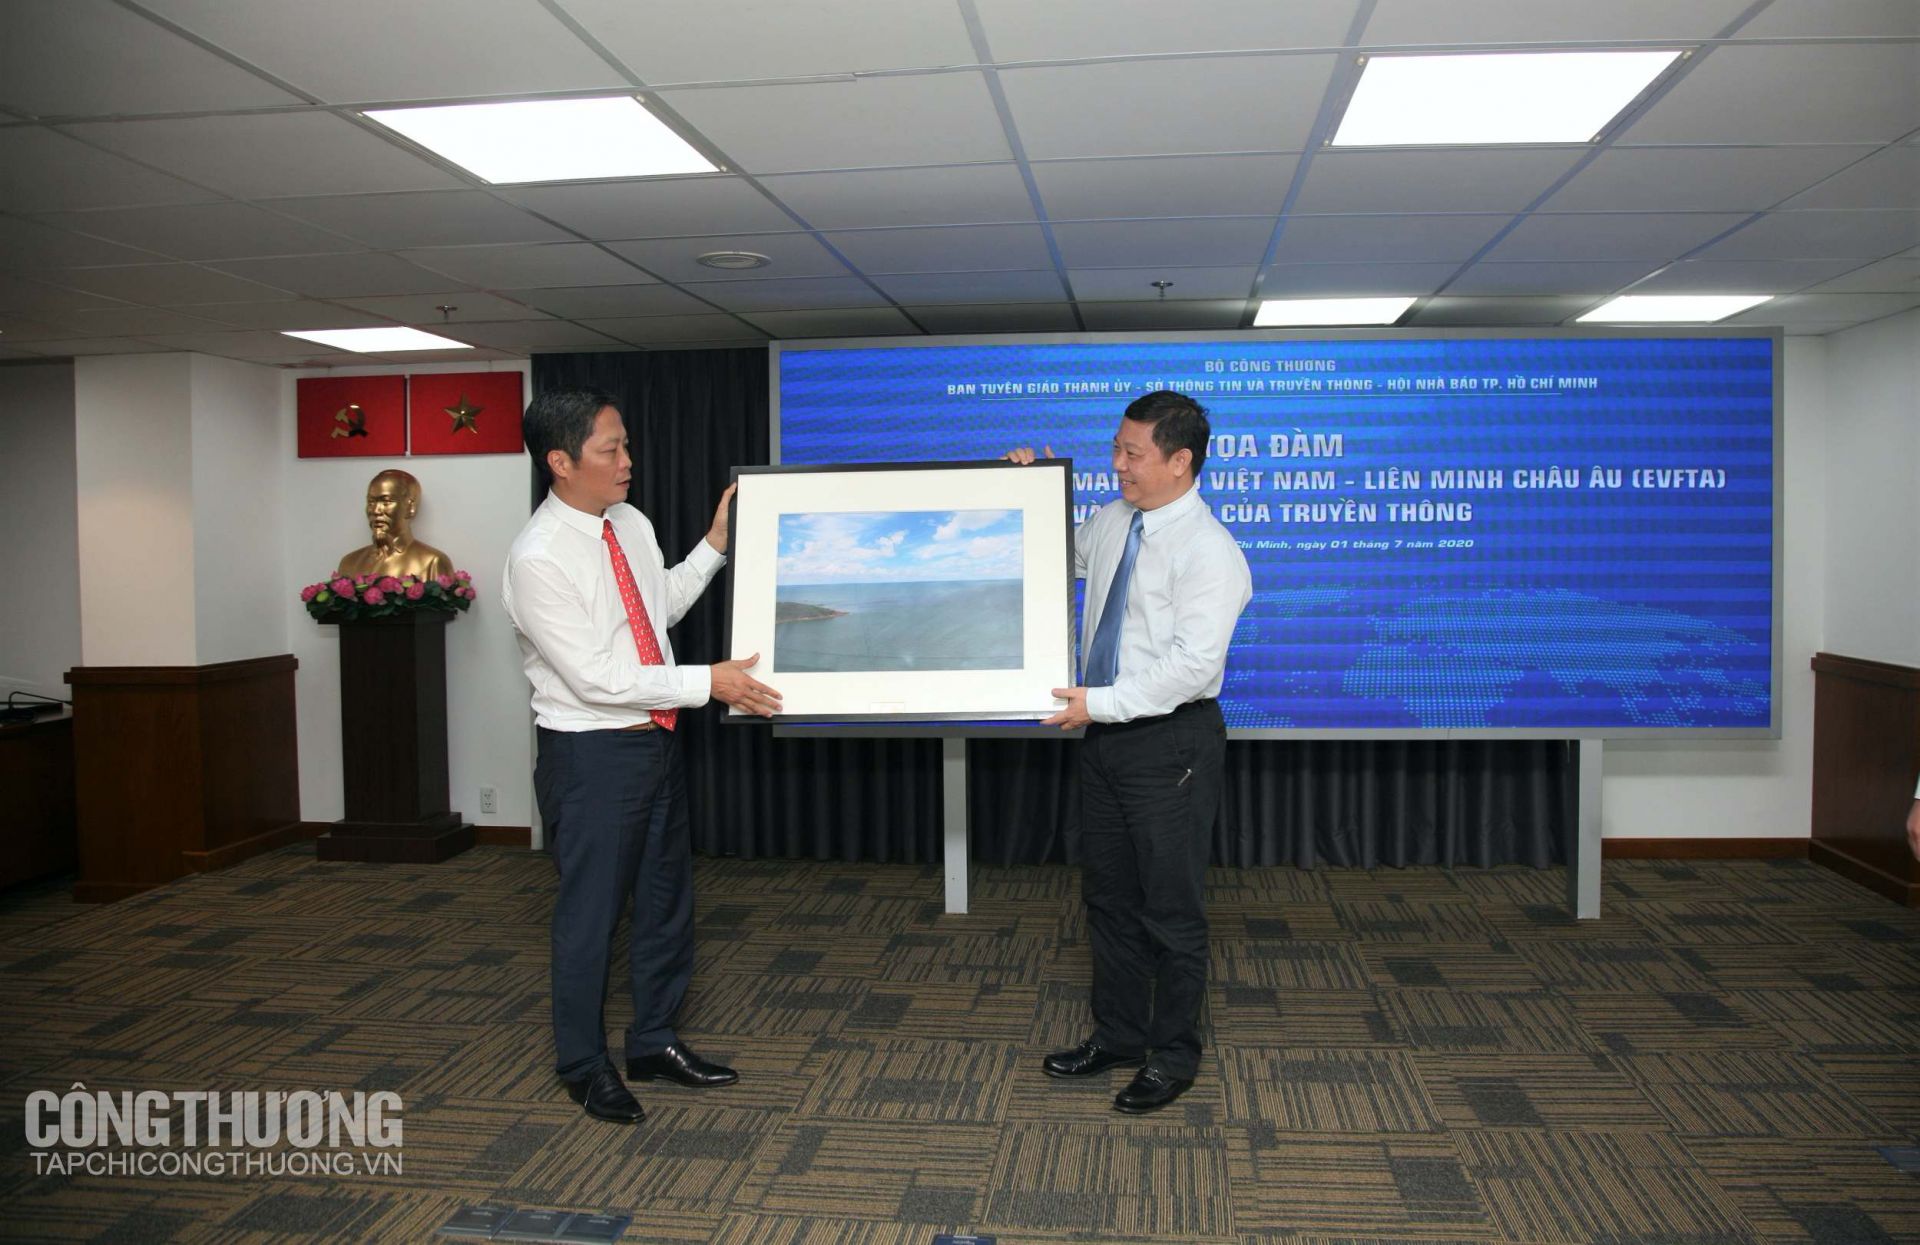 Bộ Trưởng Bộ Công Thương Trần Tuấn Anh tặng quà lưu niệm cho ông Dương Anh Đức - Phó Chủ tịch UBND TP. Hồ Chí Minh